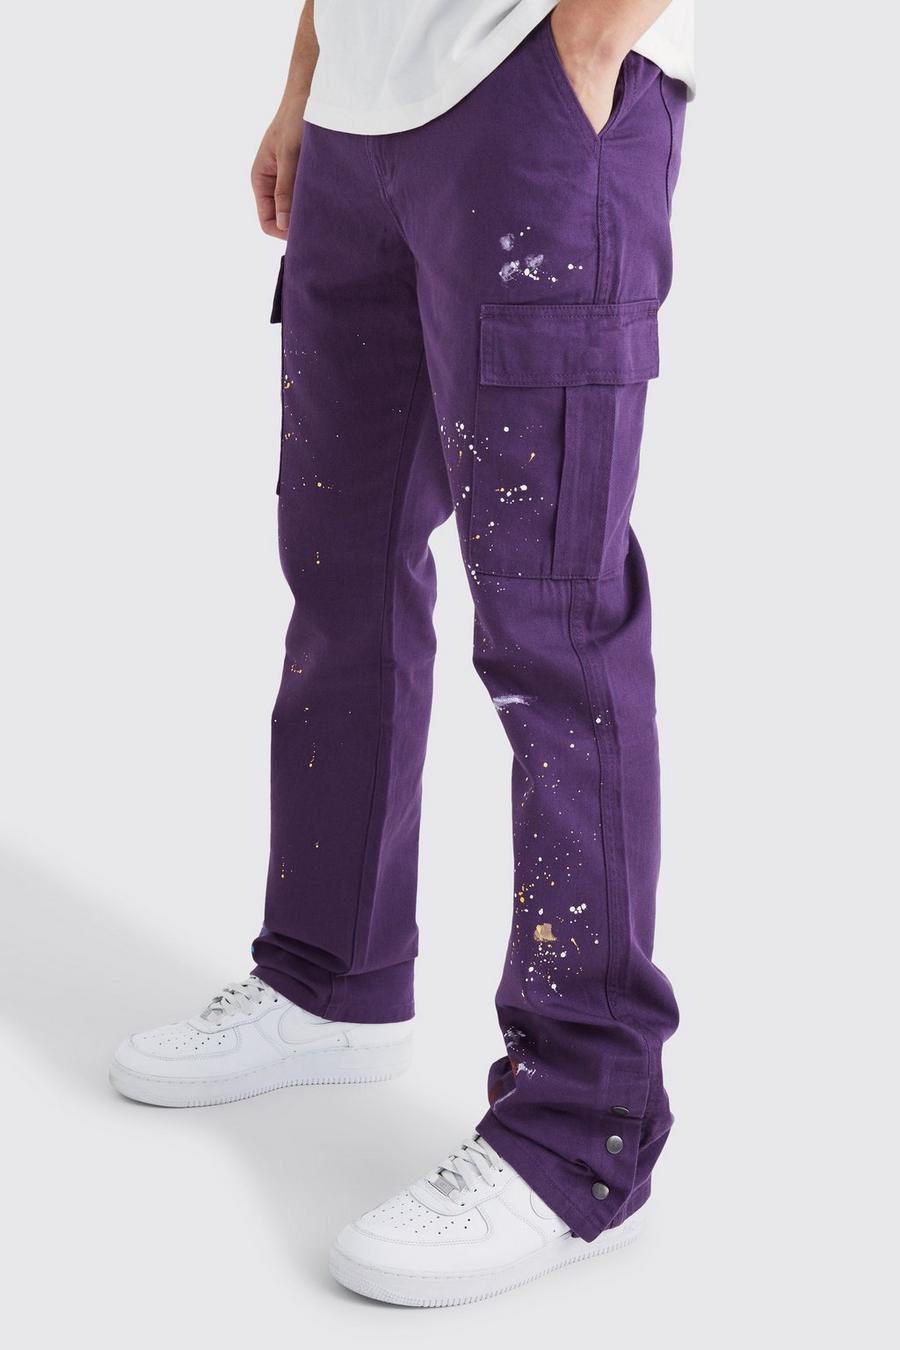 Pantaloni Cargo Tall Slim Fit a zampa con bottoni a pressione sul fondo e schizzi di colore, Purple